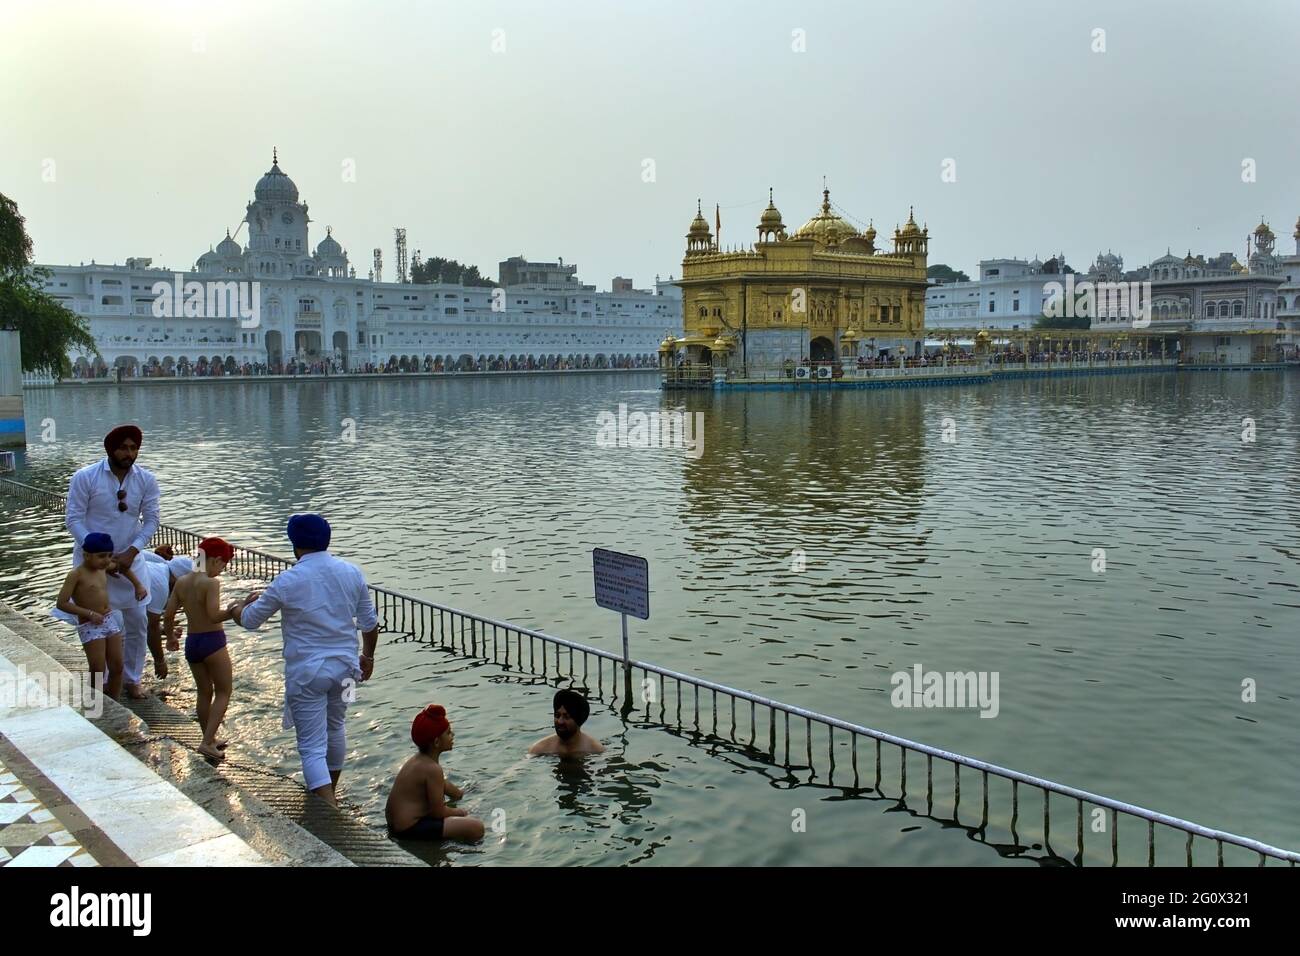 AMRITSAR, INDE - 06 novembre 2016 : les fidèles sikhs se baignent ou pionnent dans une piscine du Temple d'Or Harmandir Sahib dans l'État du Punjab, en Inde Banque D'Images